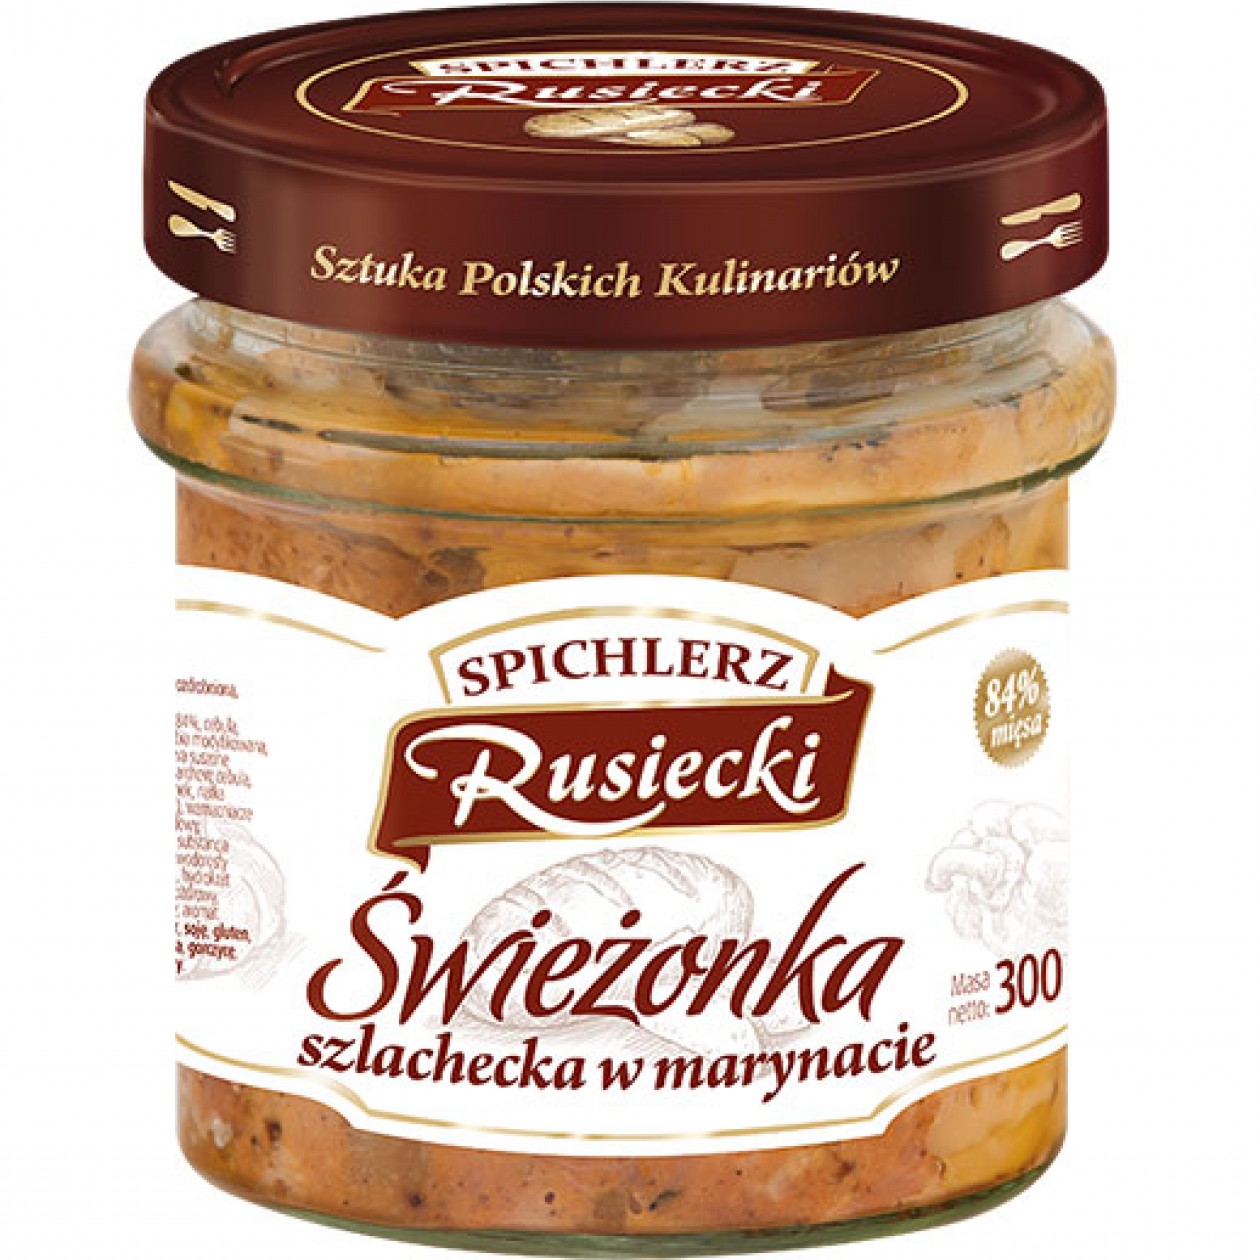 Rusiecki Swiezonka Pickled Pork 8x300g